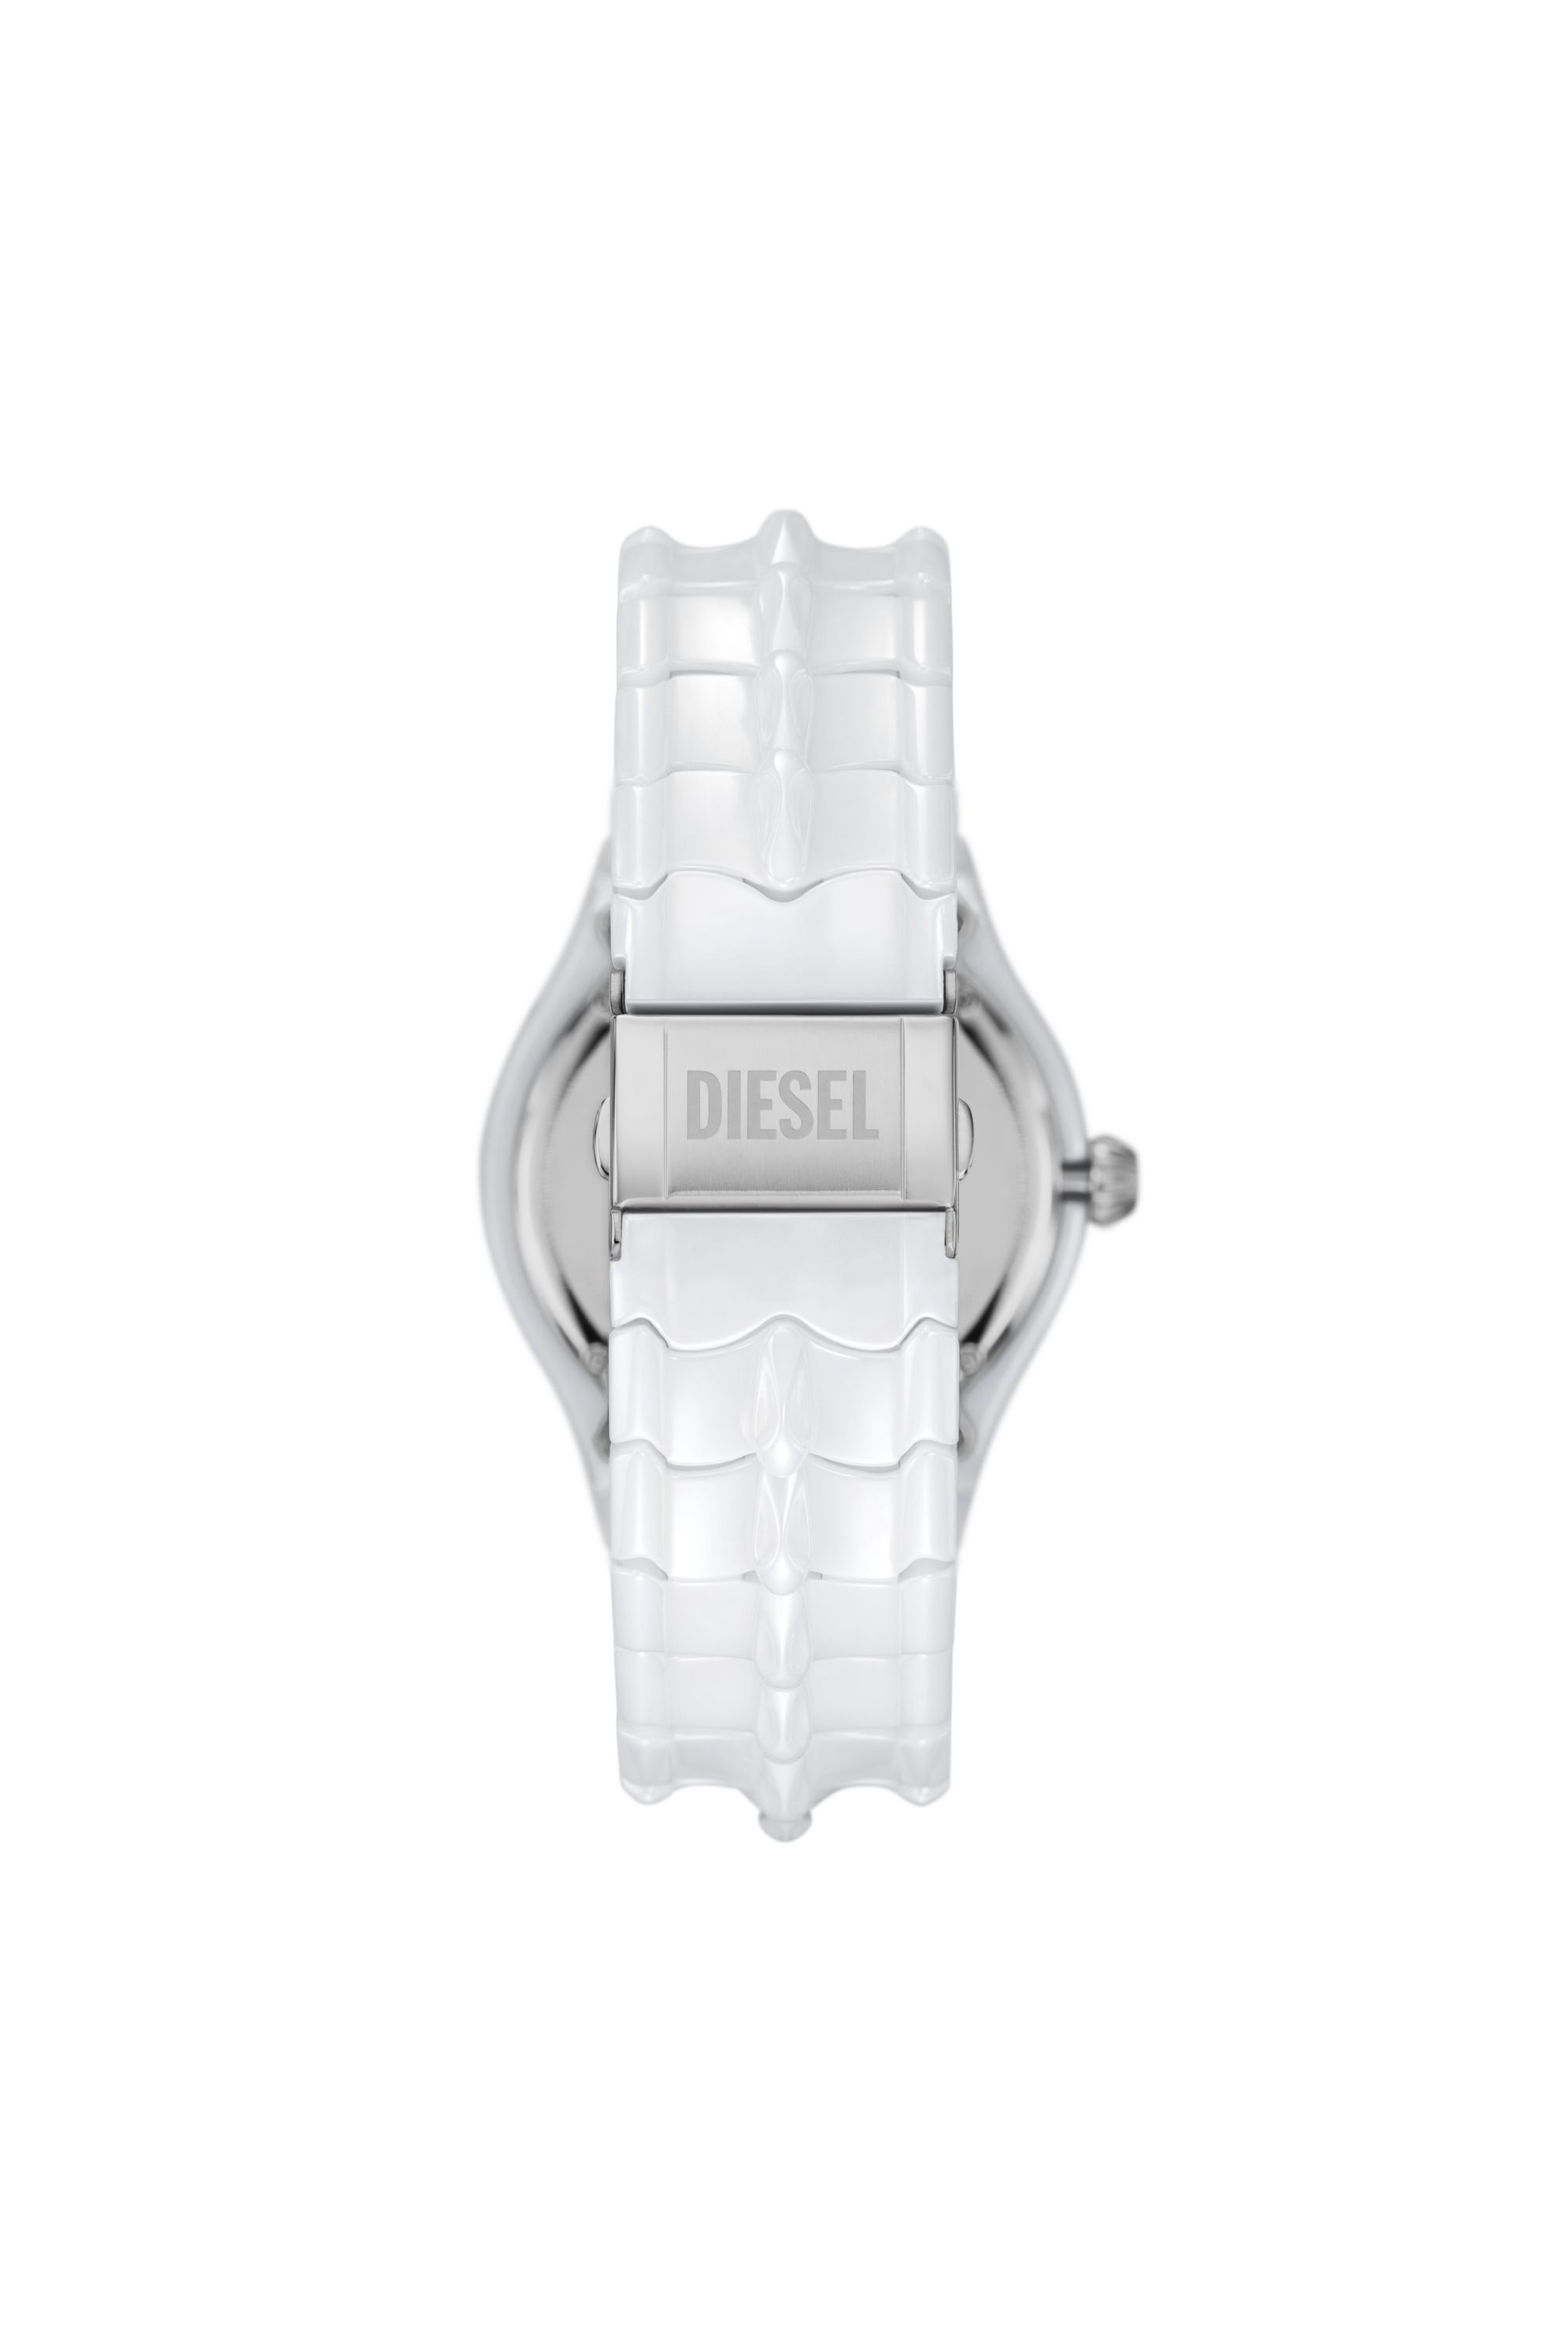 Diesel - DZ2197, Man Vert three-hand date white ceramic watch in White - Image 3